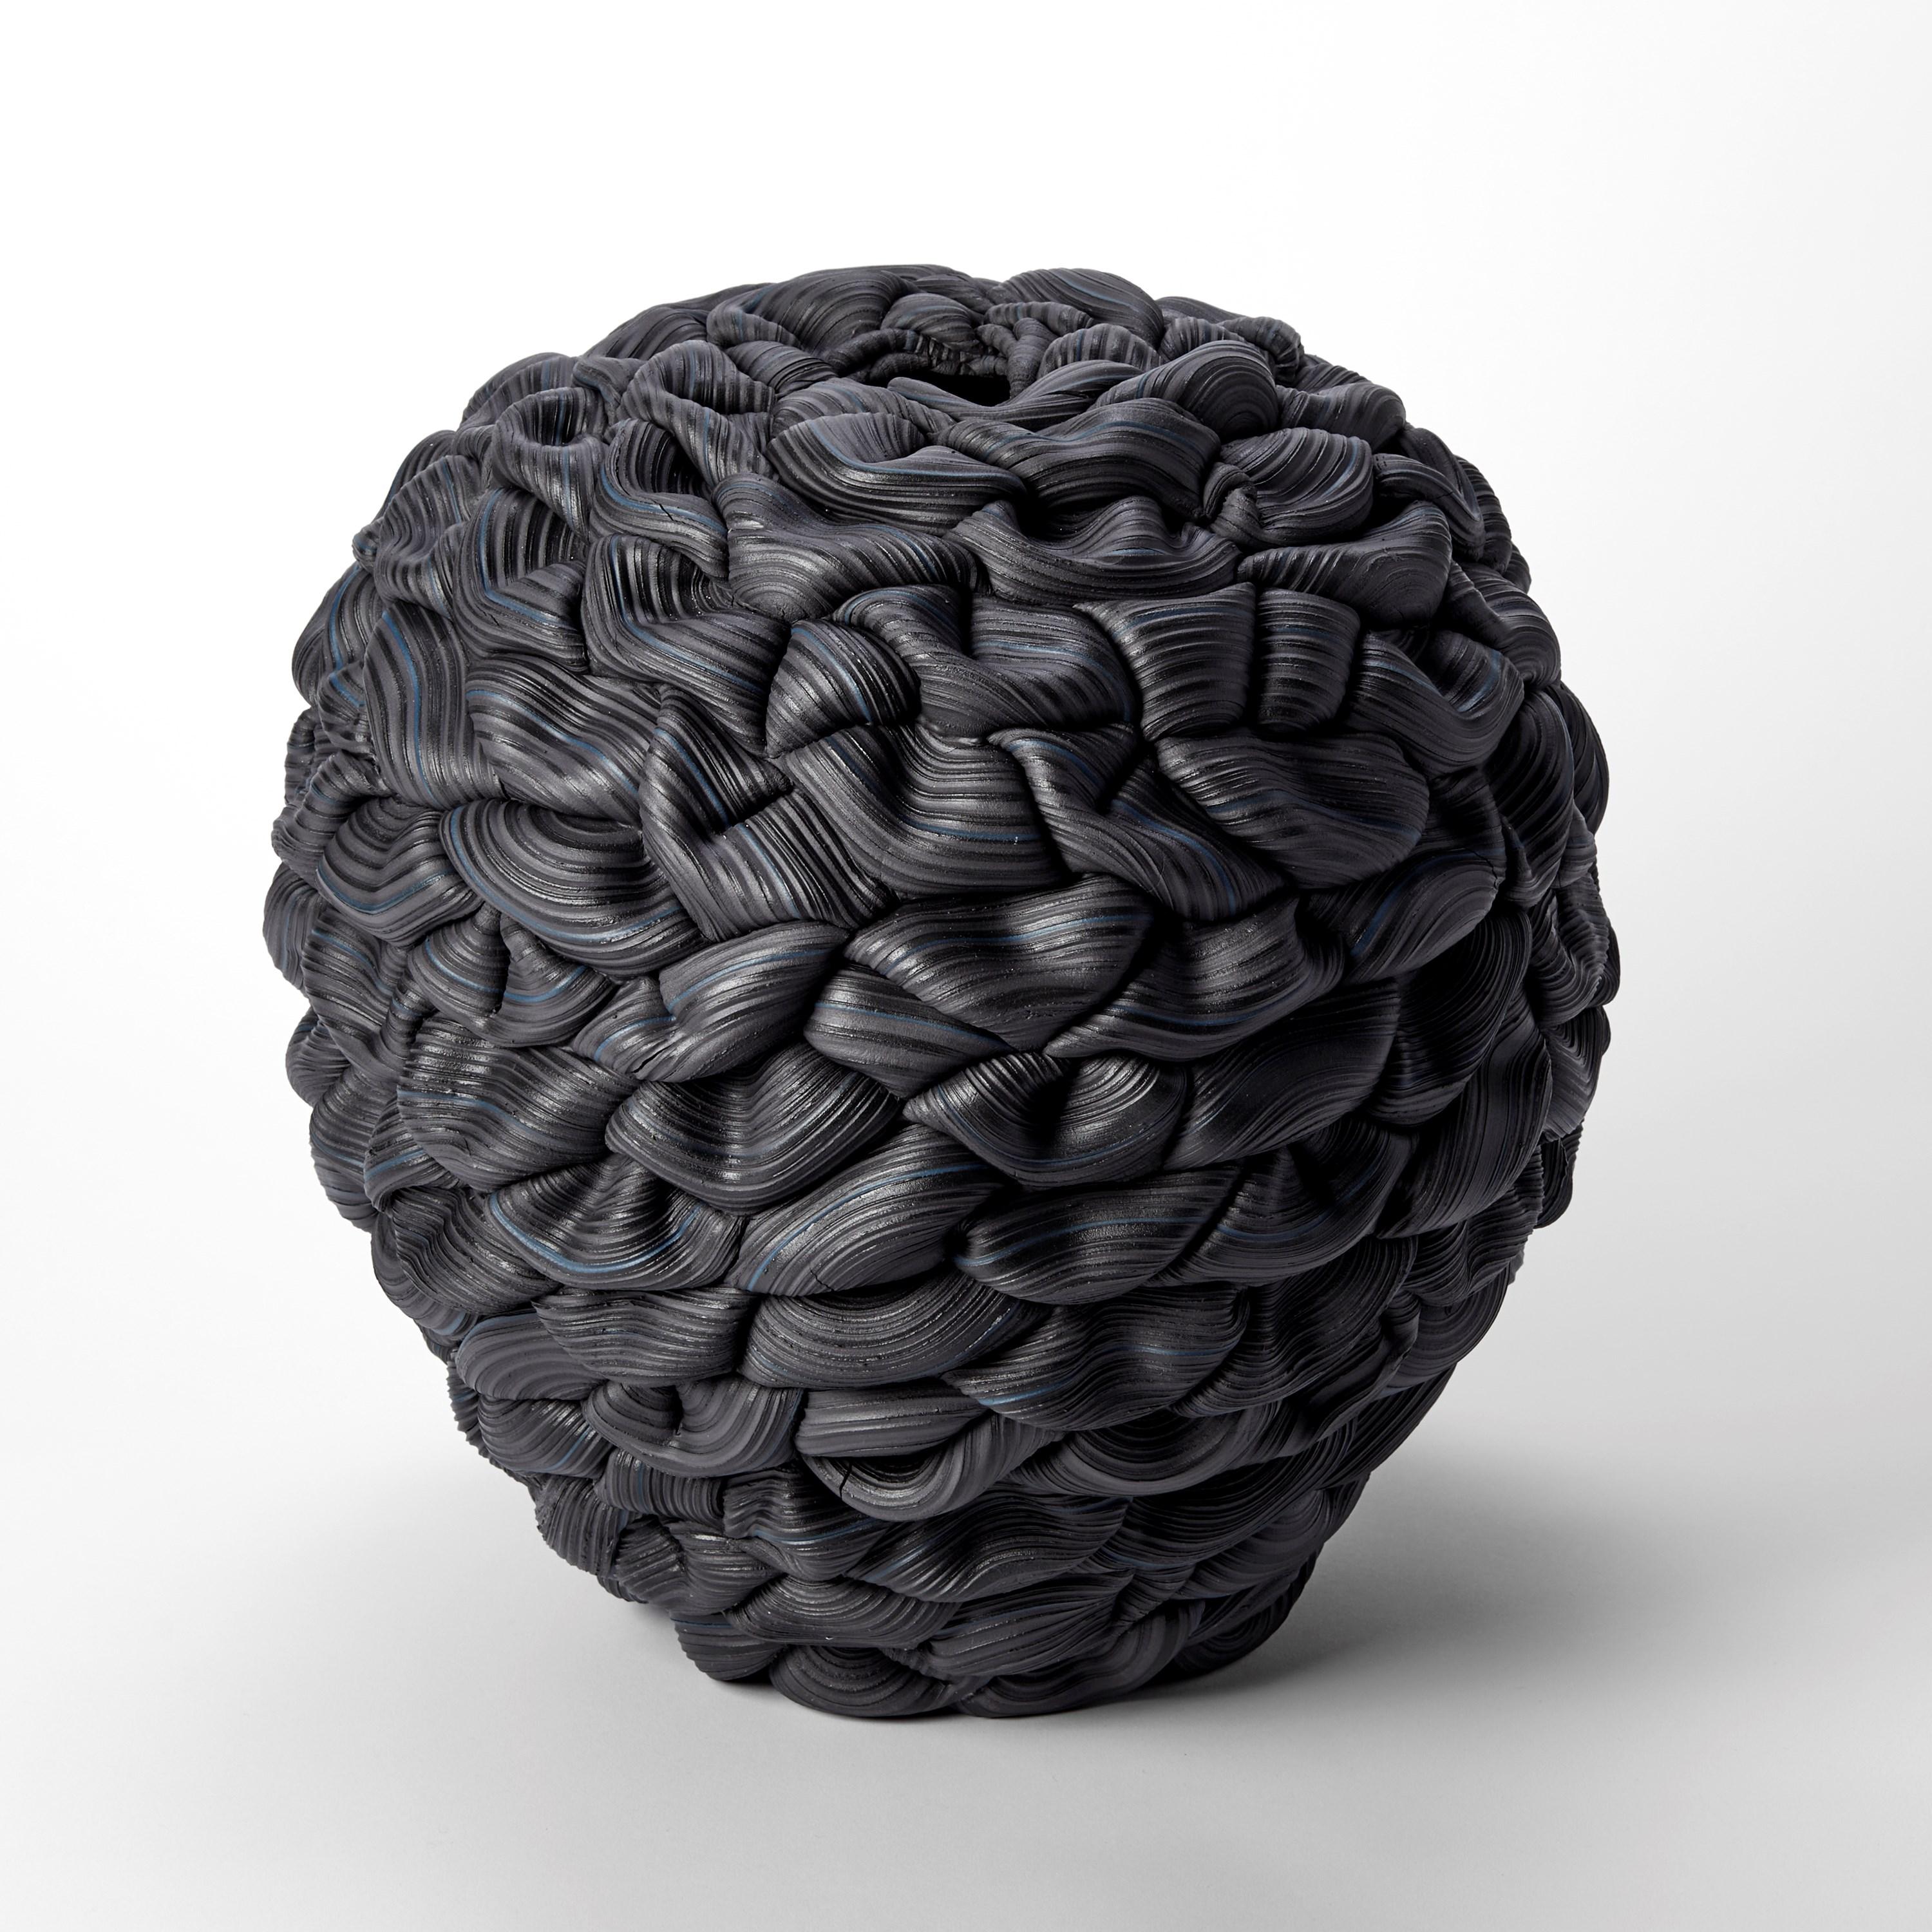 Organic Modern Banded Black Convex Fold V, black parian porcelain sculpture by Steven Edwards For Sale